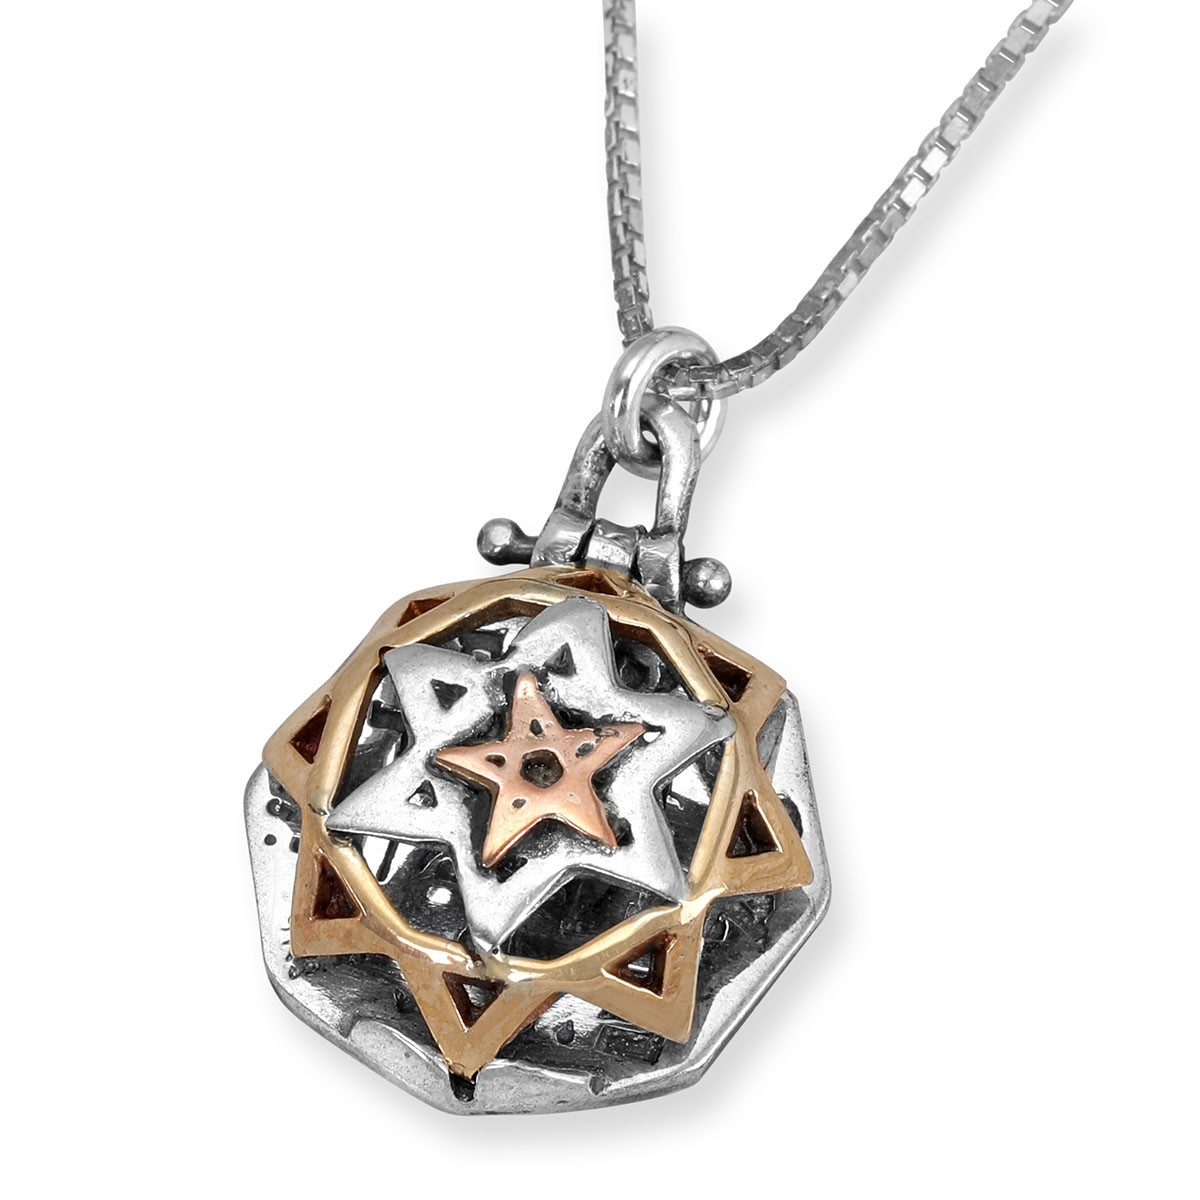 5 Metals Tikkun Chava Kabbalah Necklace (Eve's Tikkun)  - 1